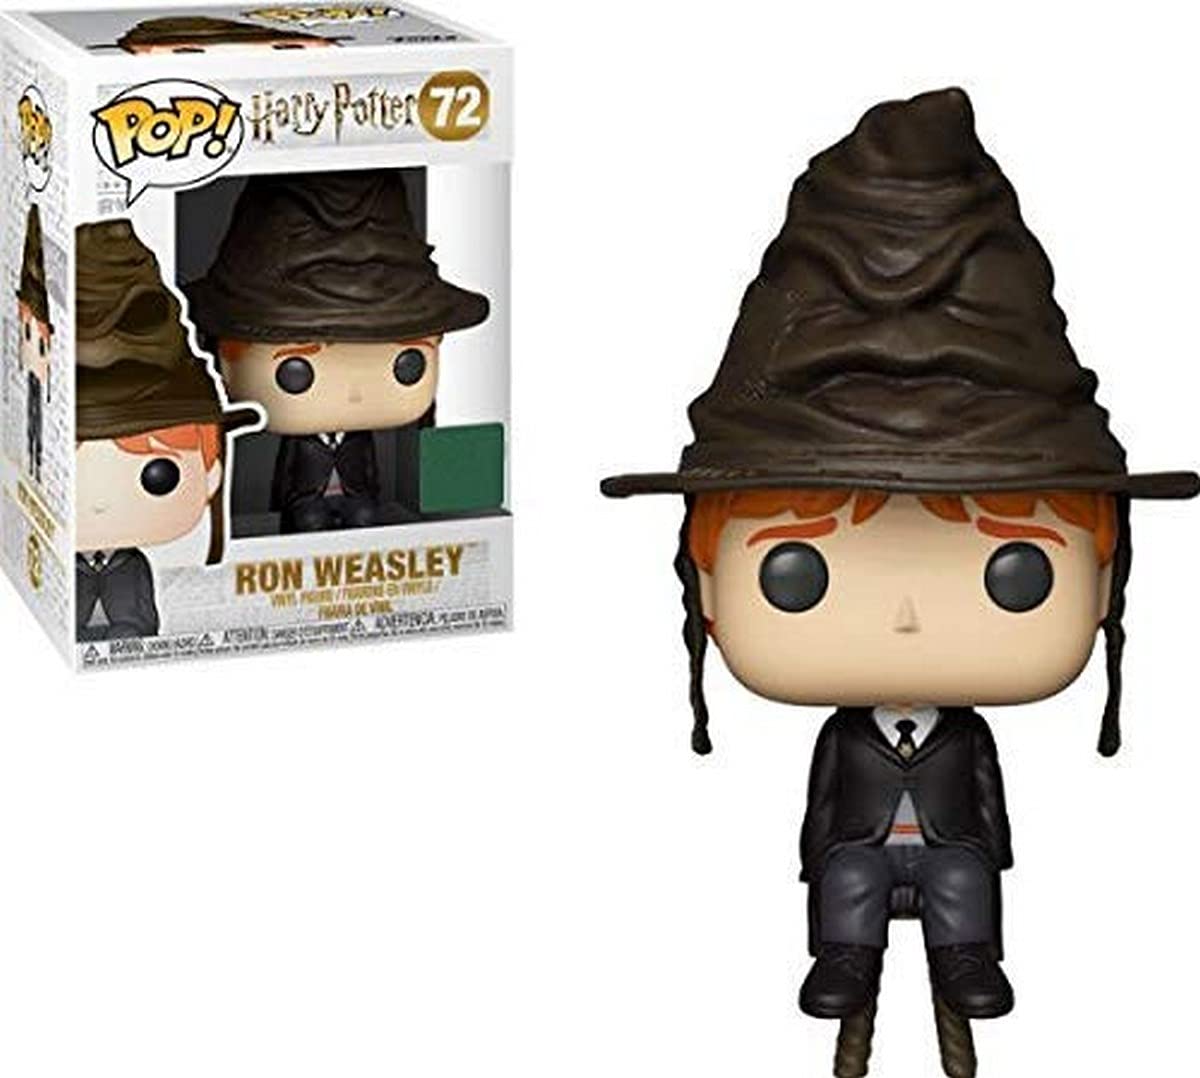 Funko POP! Harry Potter Ron Weasley #72 Exclusive